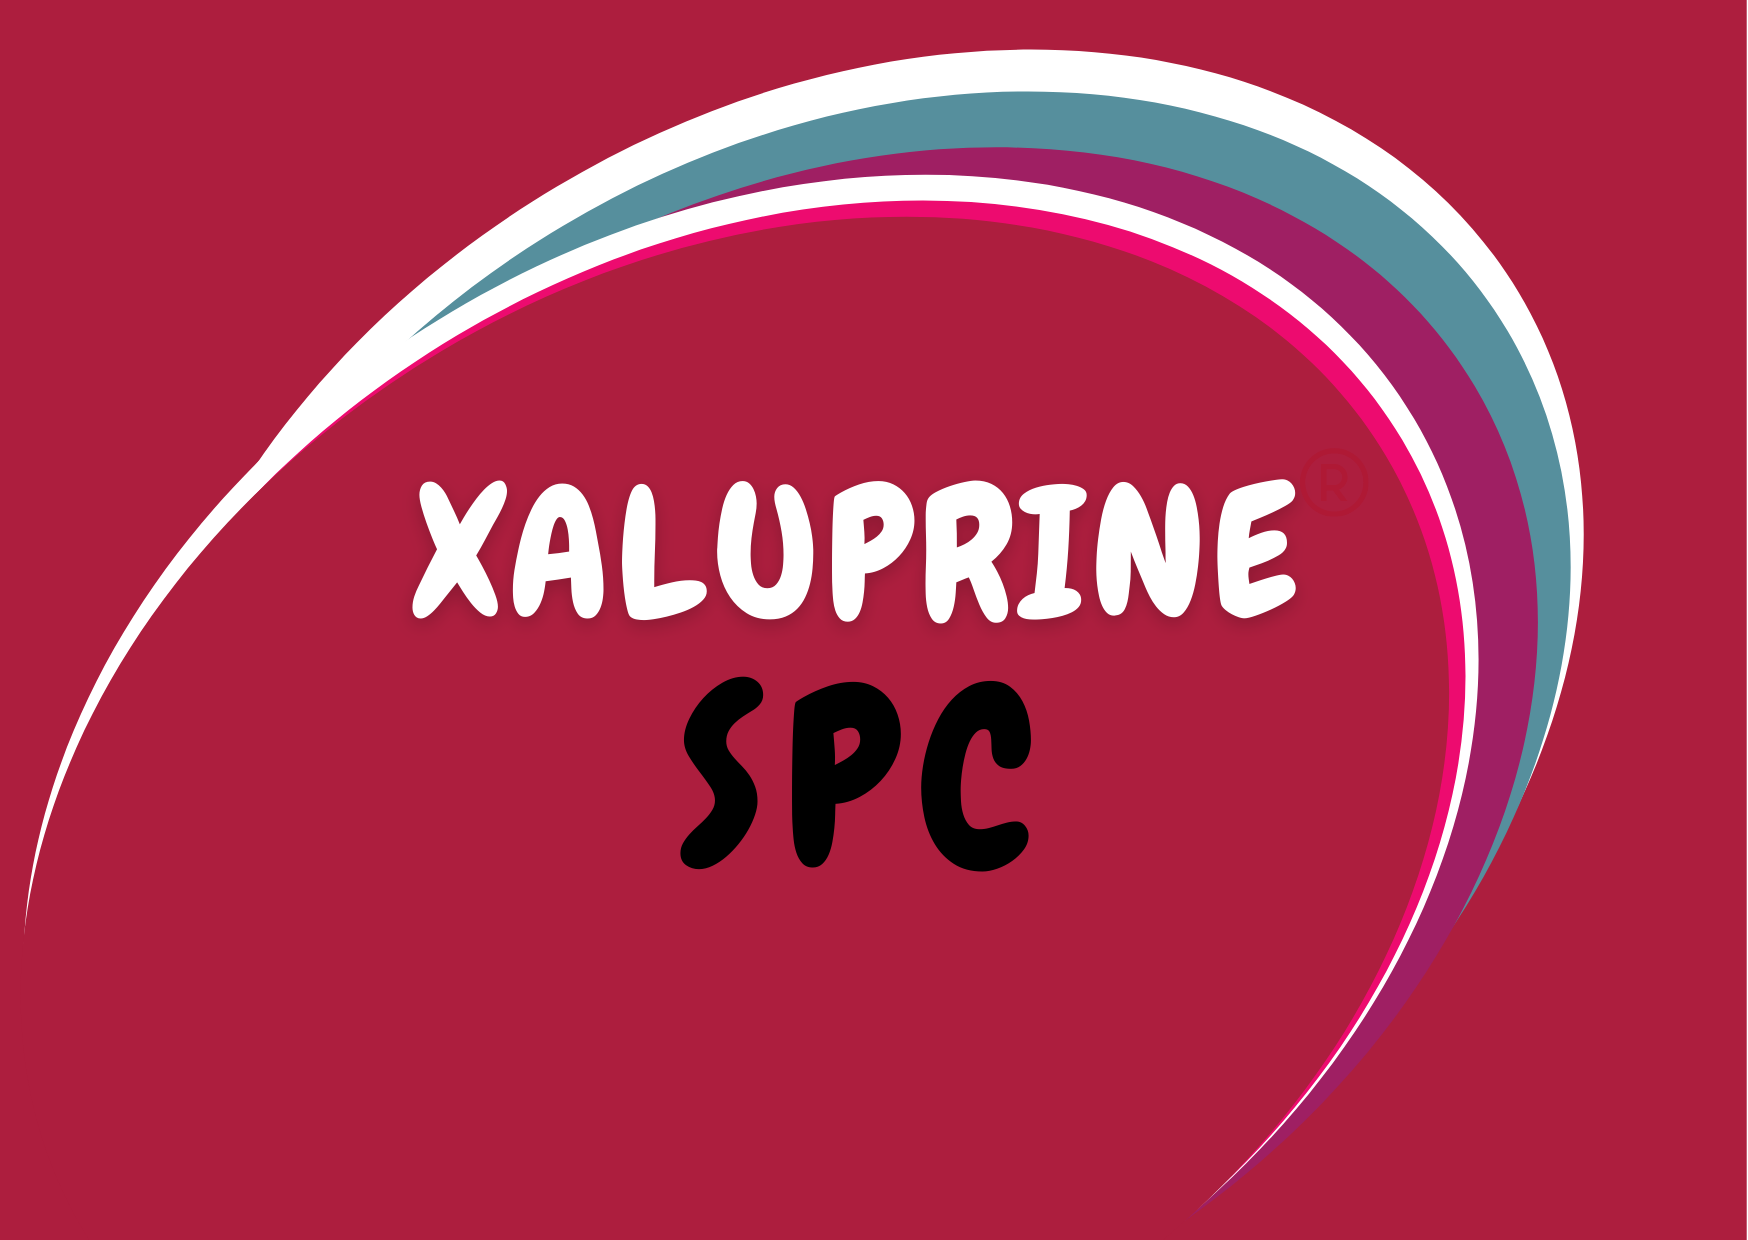 Xaluprine Landing page images (5)